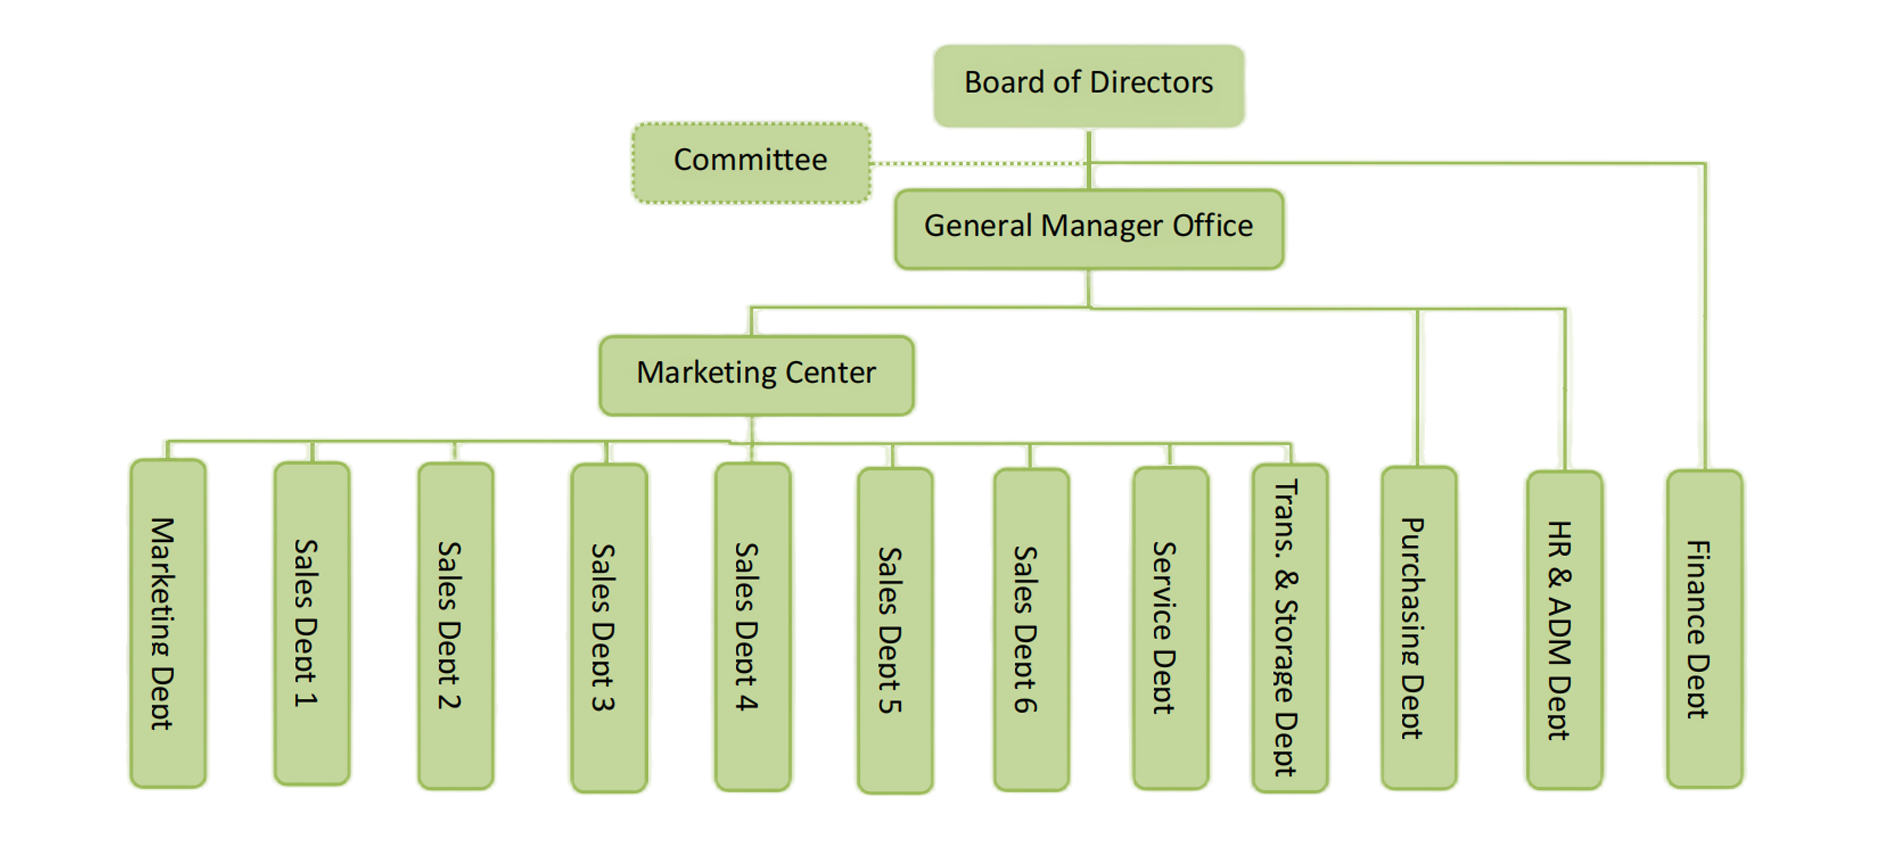 Organizasyon yapısı